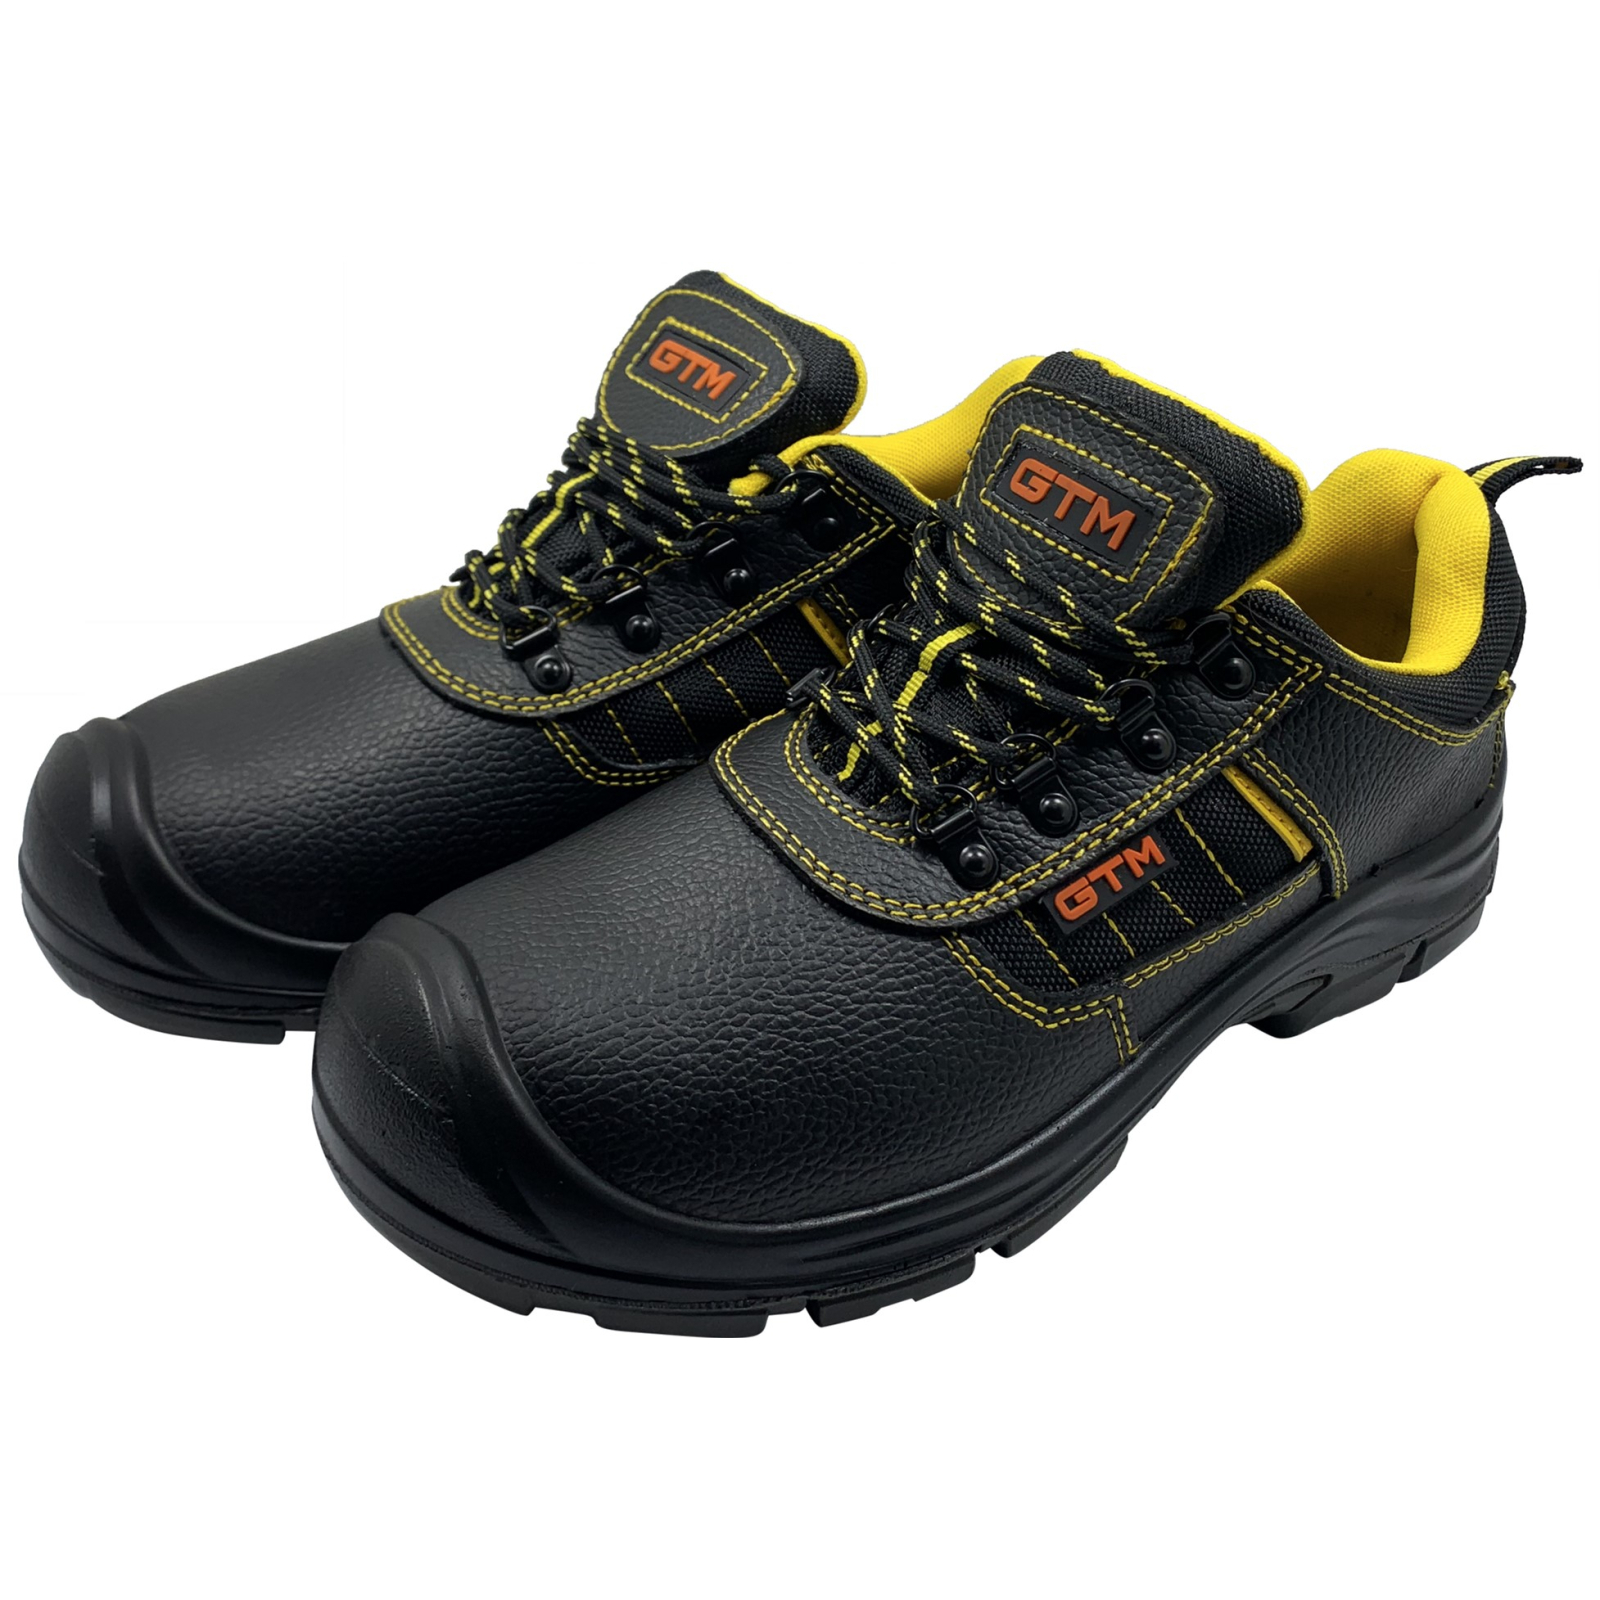 Ботинки рабочие GTM SM-078 мет. носок, р.40 с желтыми вставками (SM-078-40) изображение 3